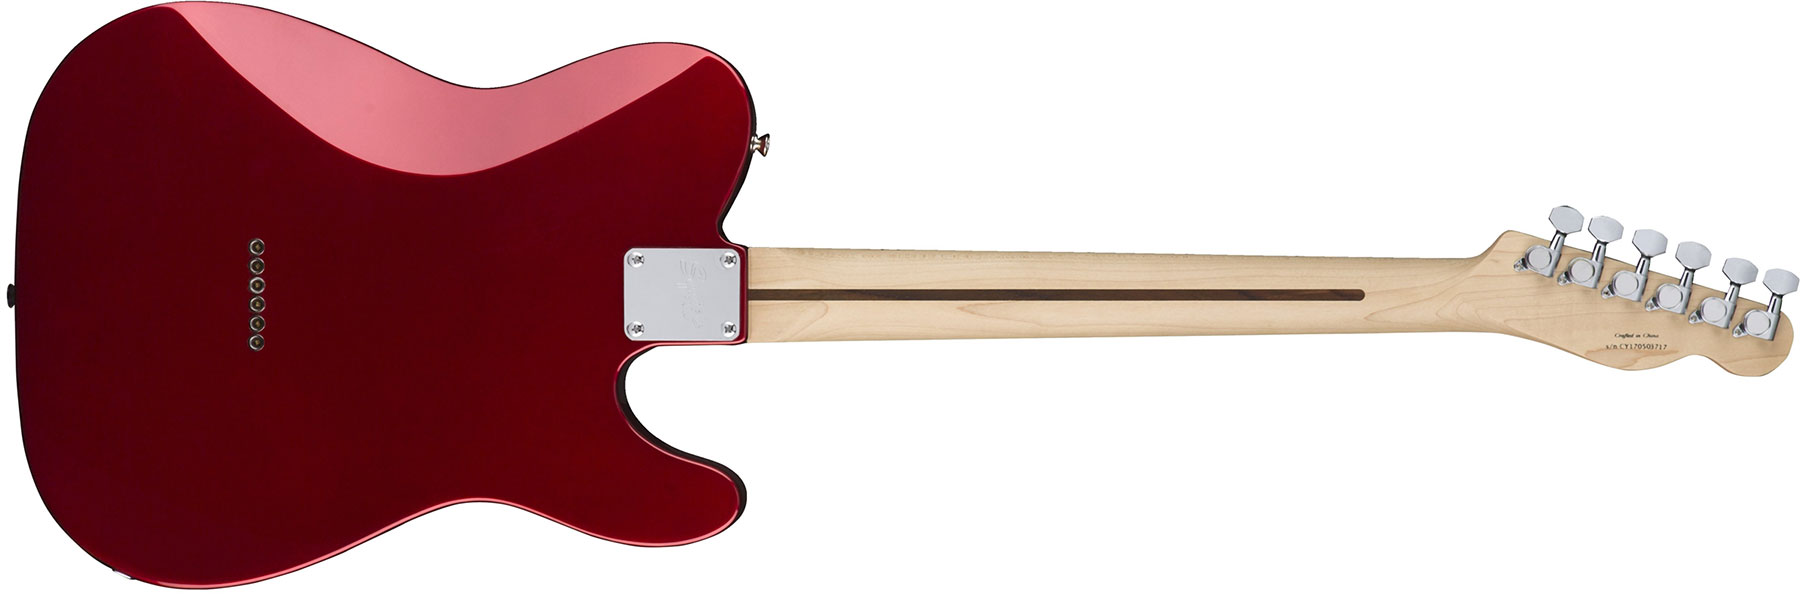 Squier Tele Contemporary Hh Lh Gaucher Mn - Dark Metallic Red - Guitarra electrica para zurdos - Variation 1